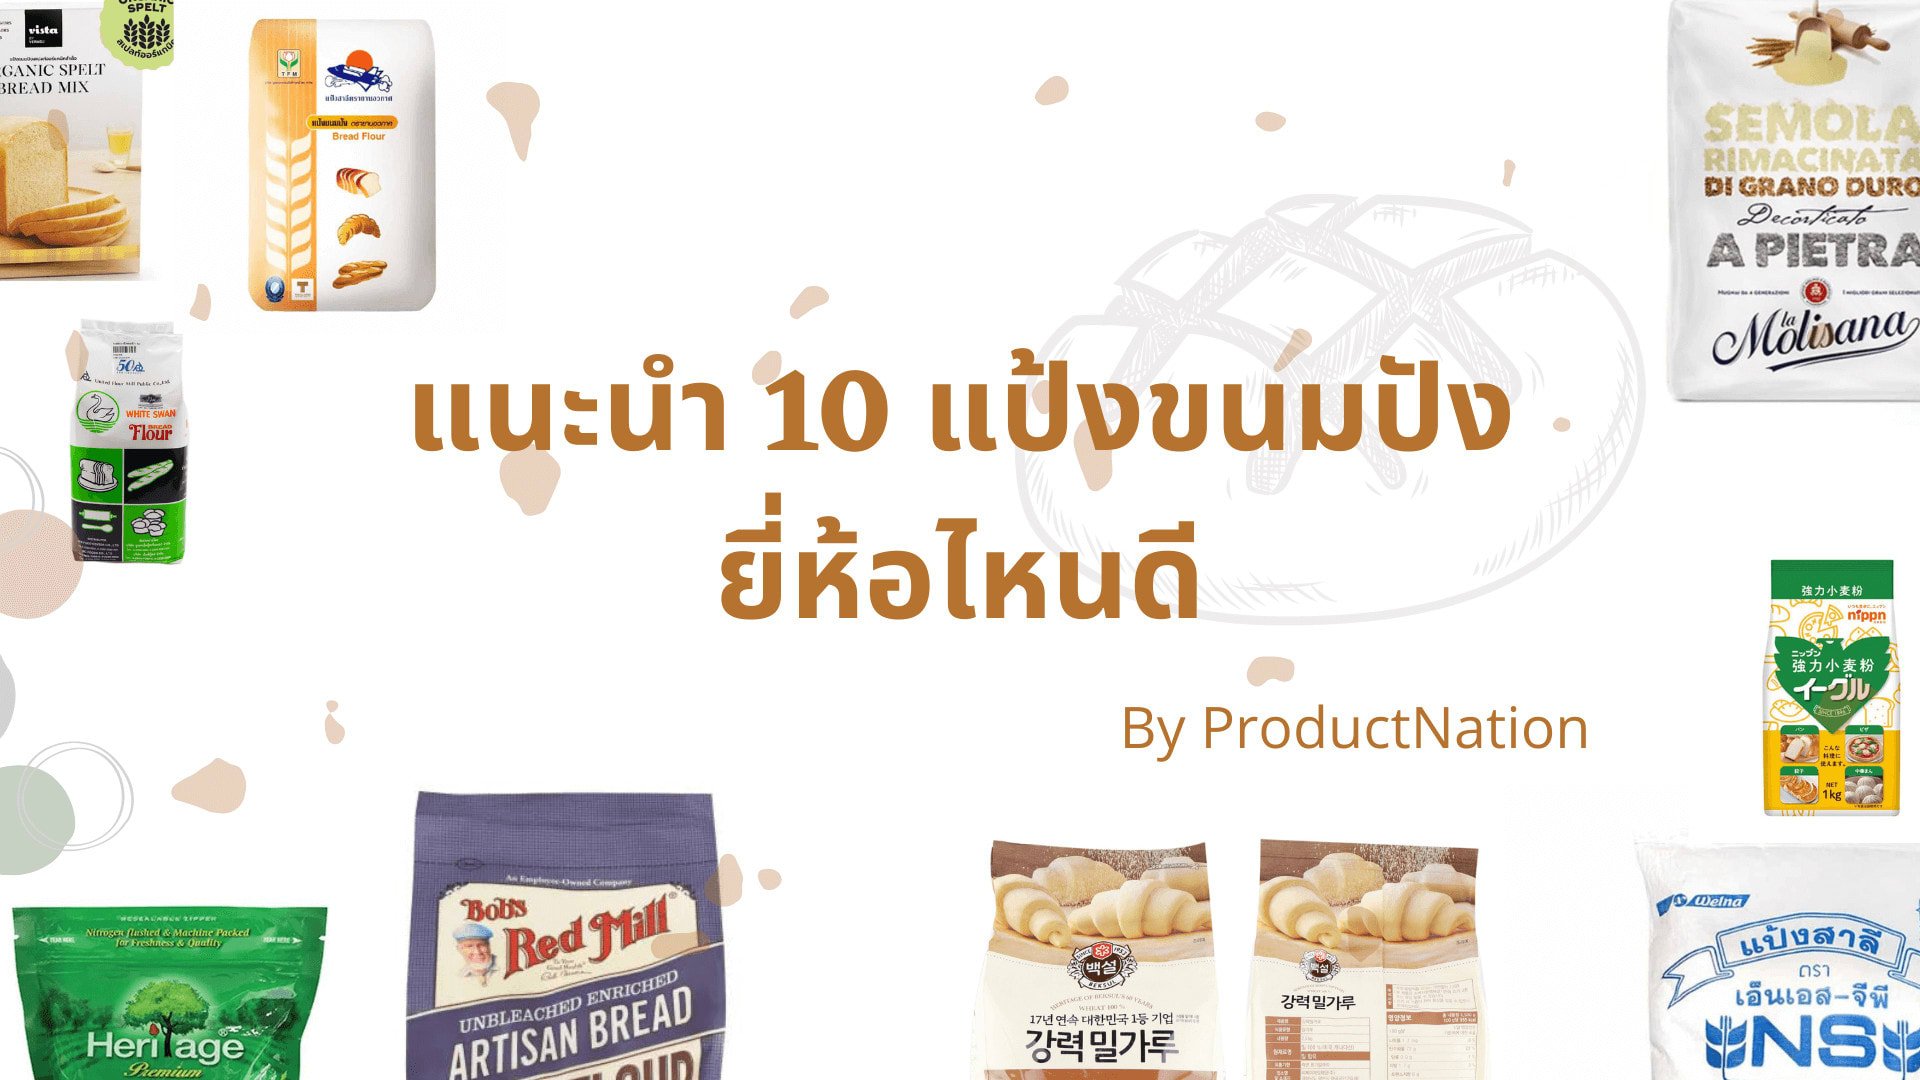 แนะนำ 10 แป้งขนมปัง ยี่ห้อไหนดี ปก ProductNation TH